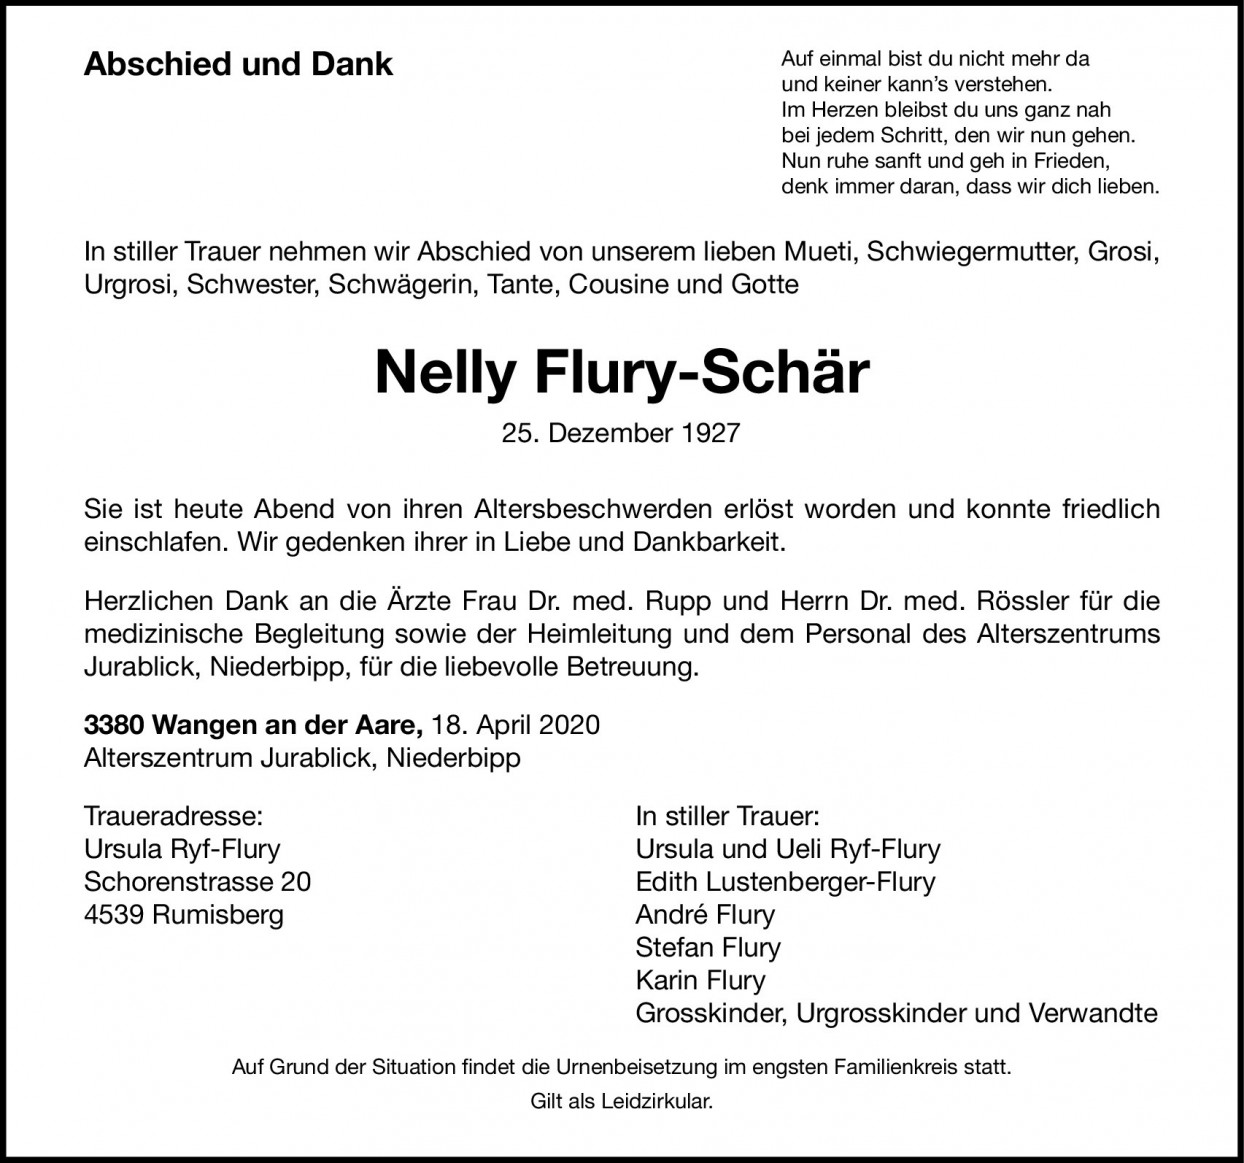 Nelly Flury-Schär